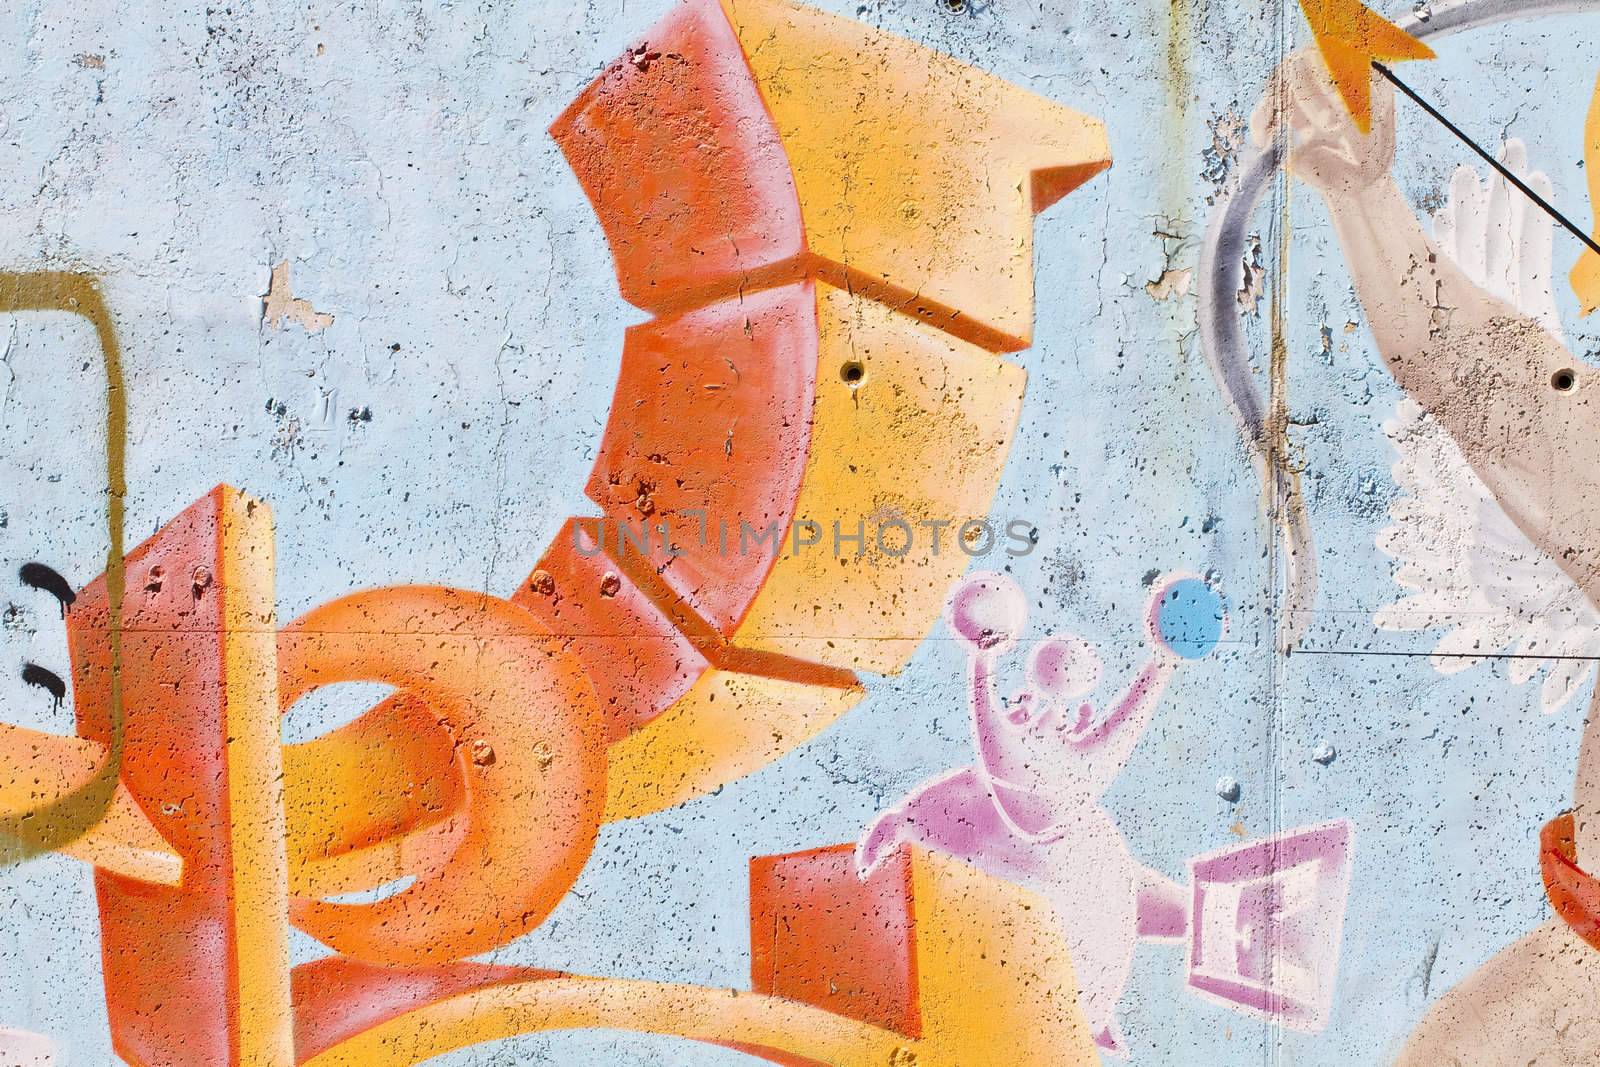 Street art, segment of an urban grafitti on wall by FernandoCortes